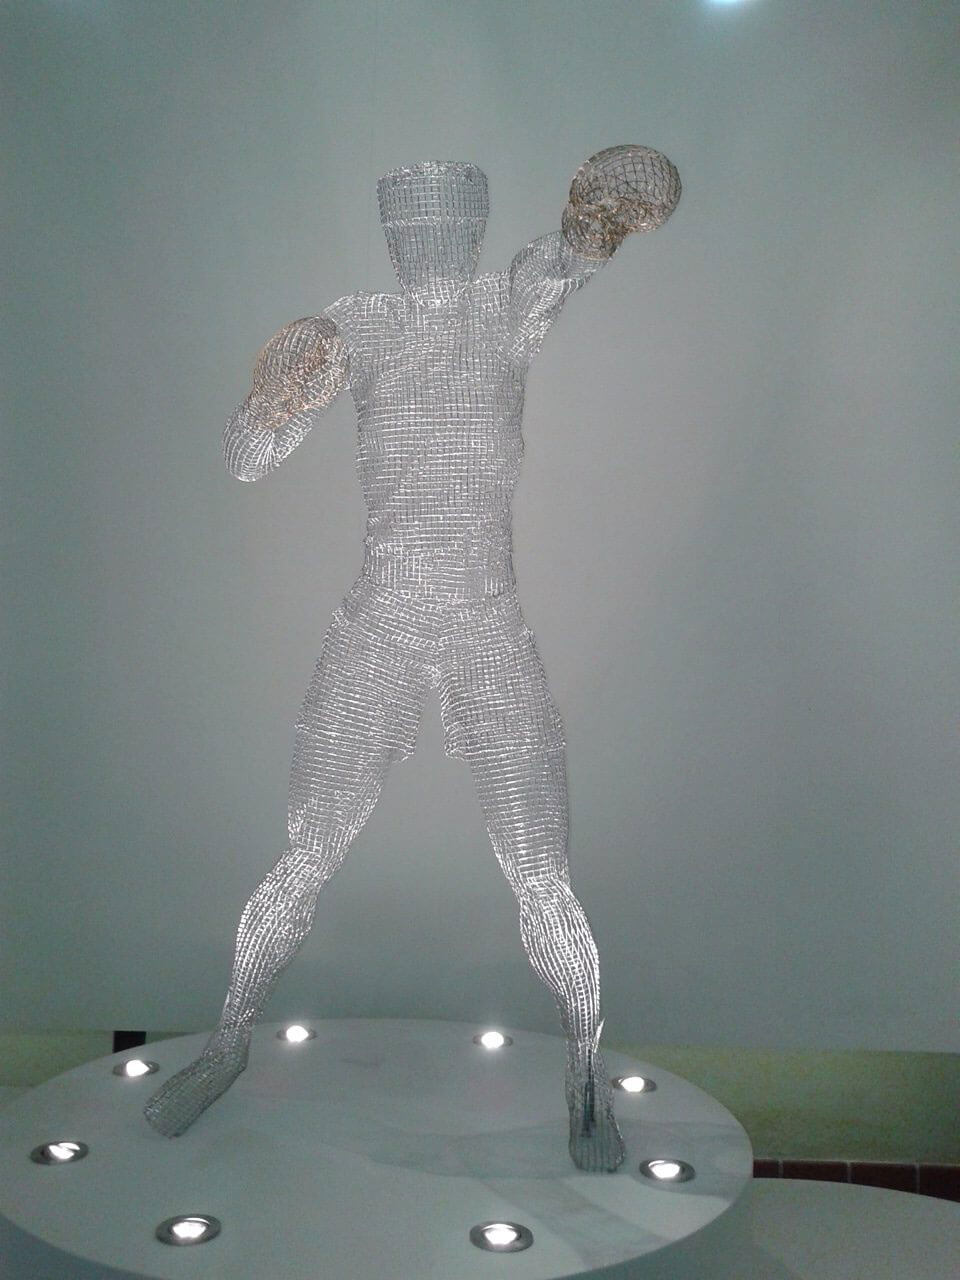 Michelle Castles Sculpture - The Boxer Front View